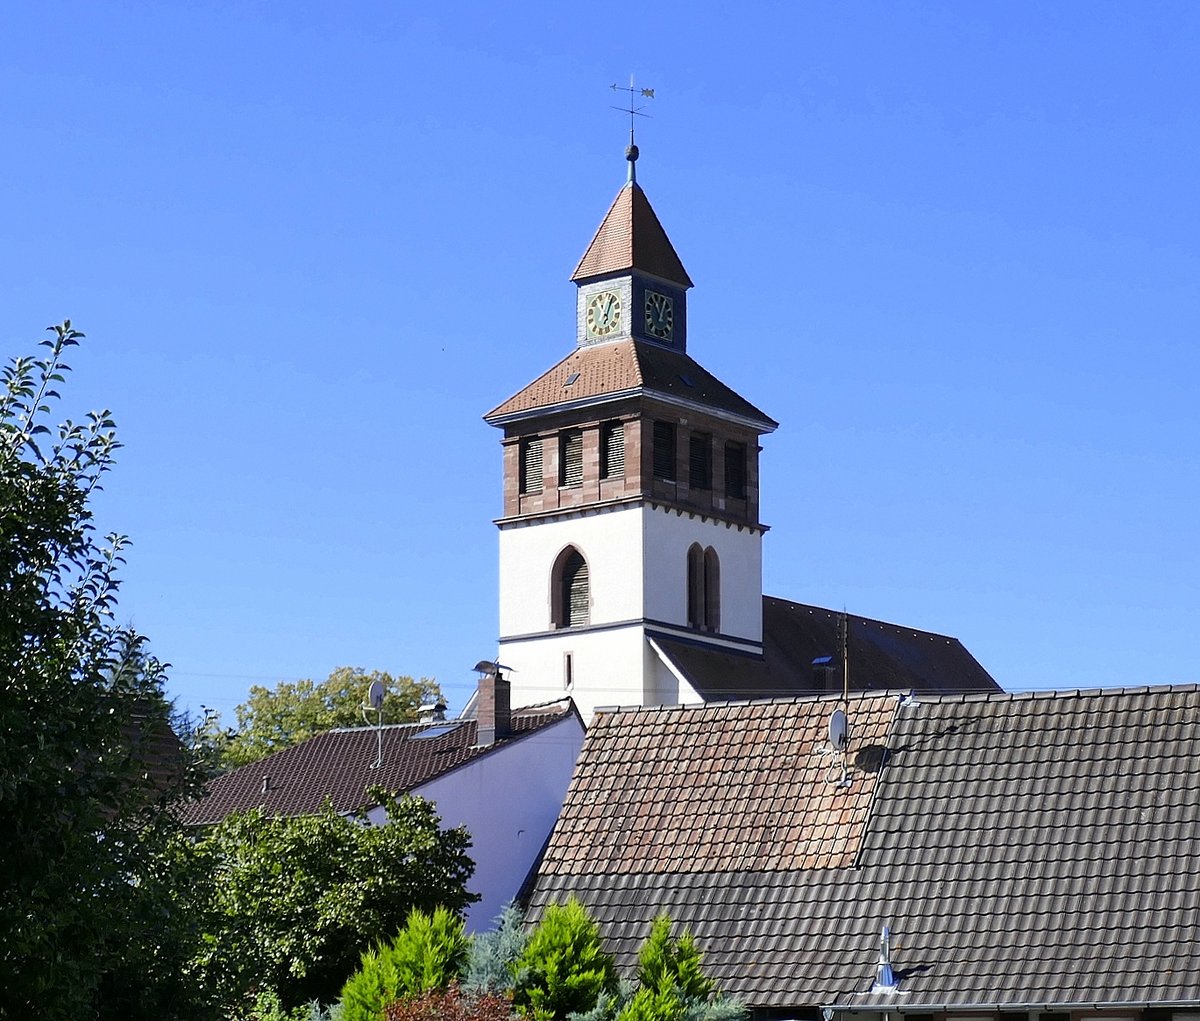 Binzen, Blick über die Dächer des Ortes zum Turm der Laurentiuskirche, Sept.2020